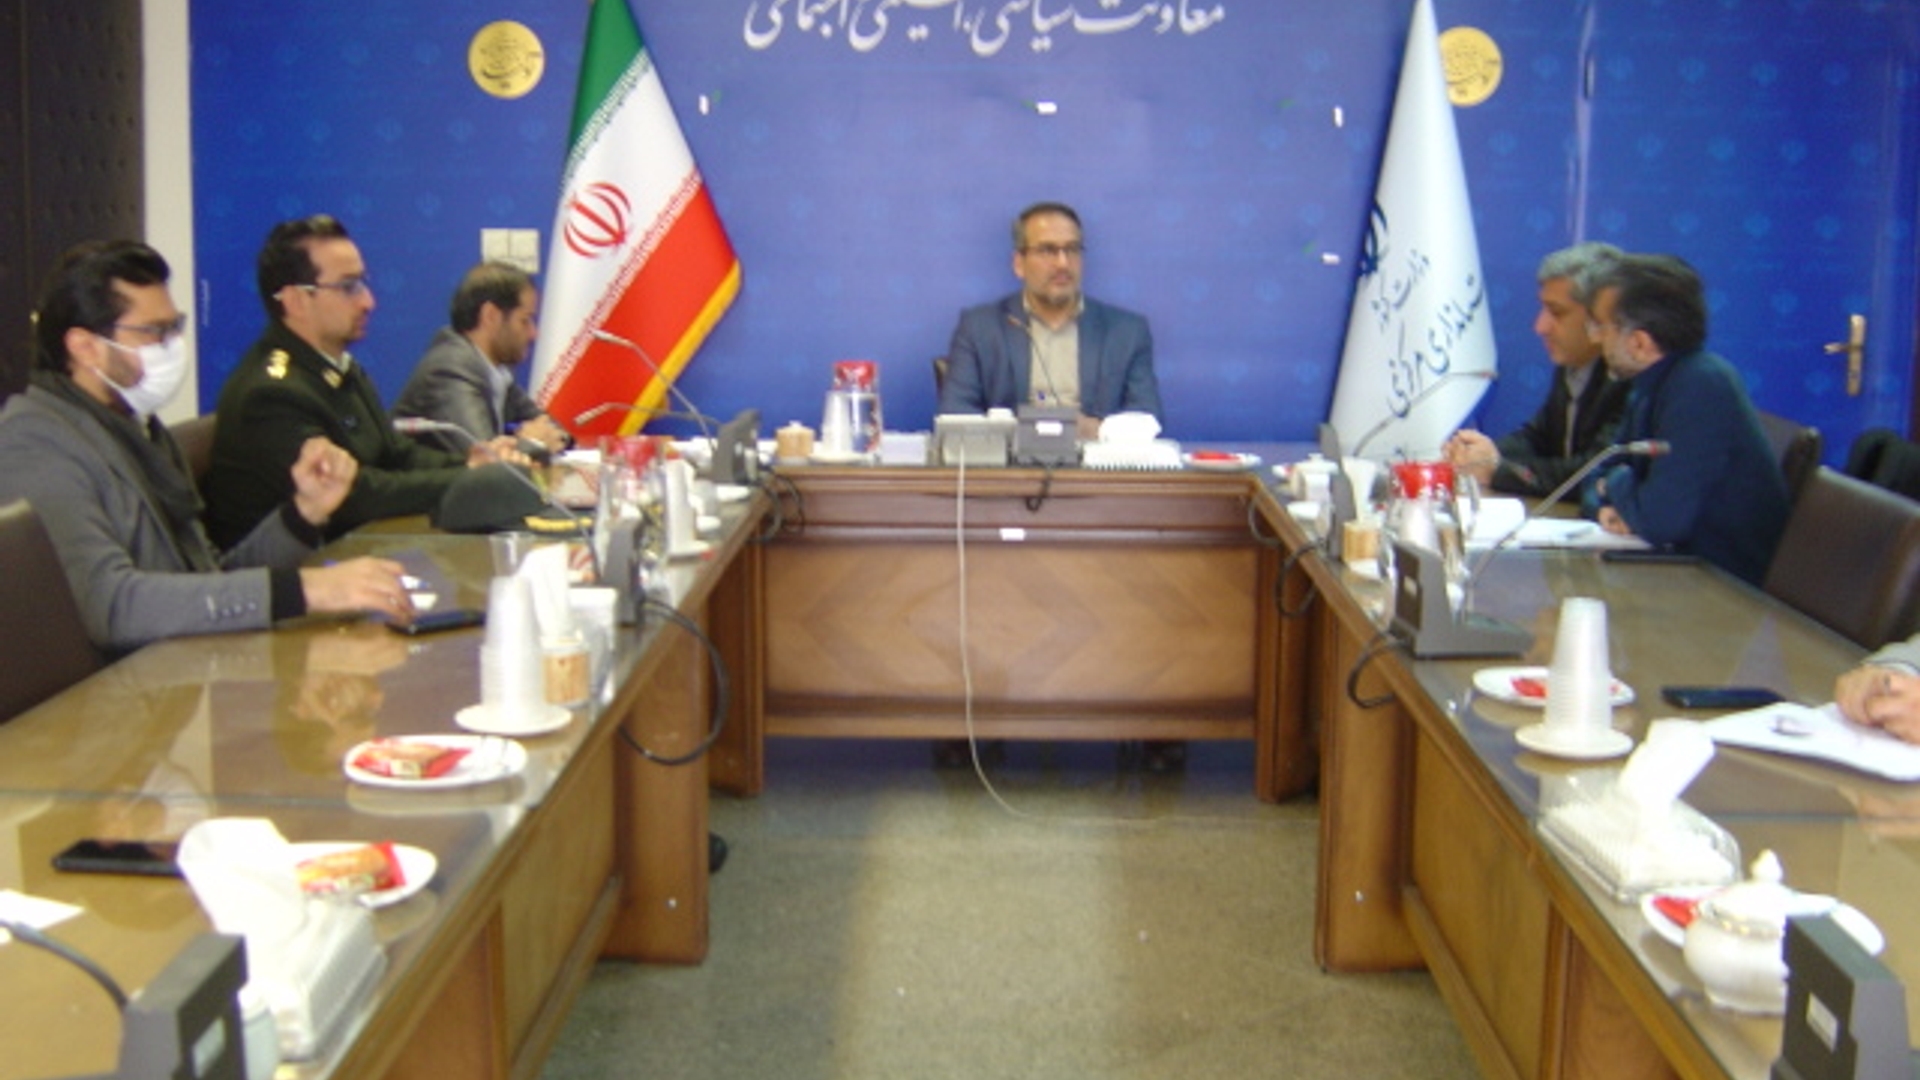 جلسه کمیته تخصصی تظارت بر تخلفات اینترنتی استان در ساعت 10-30 صبح روز پنج شنبه مورخ 1401-9-24 به ریاست آقای رحیمی تبار برگزار گردید.